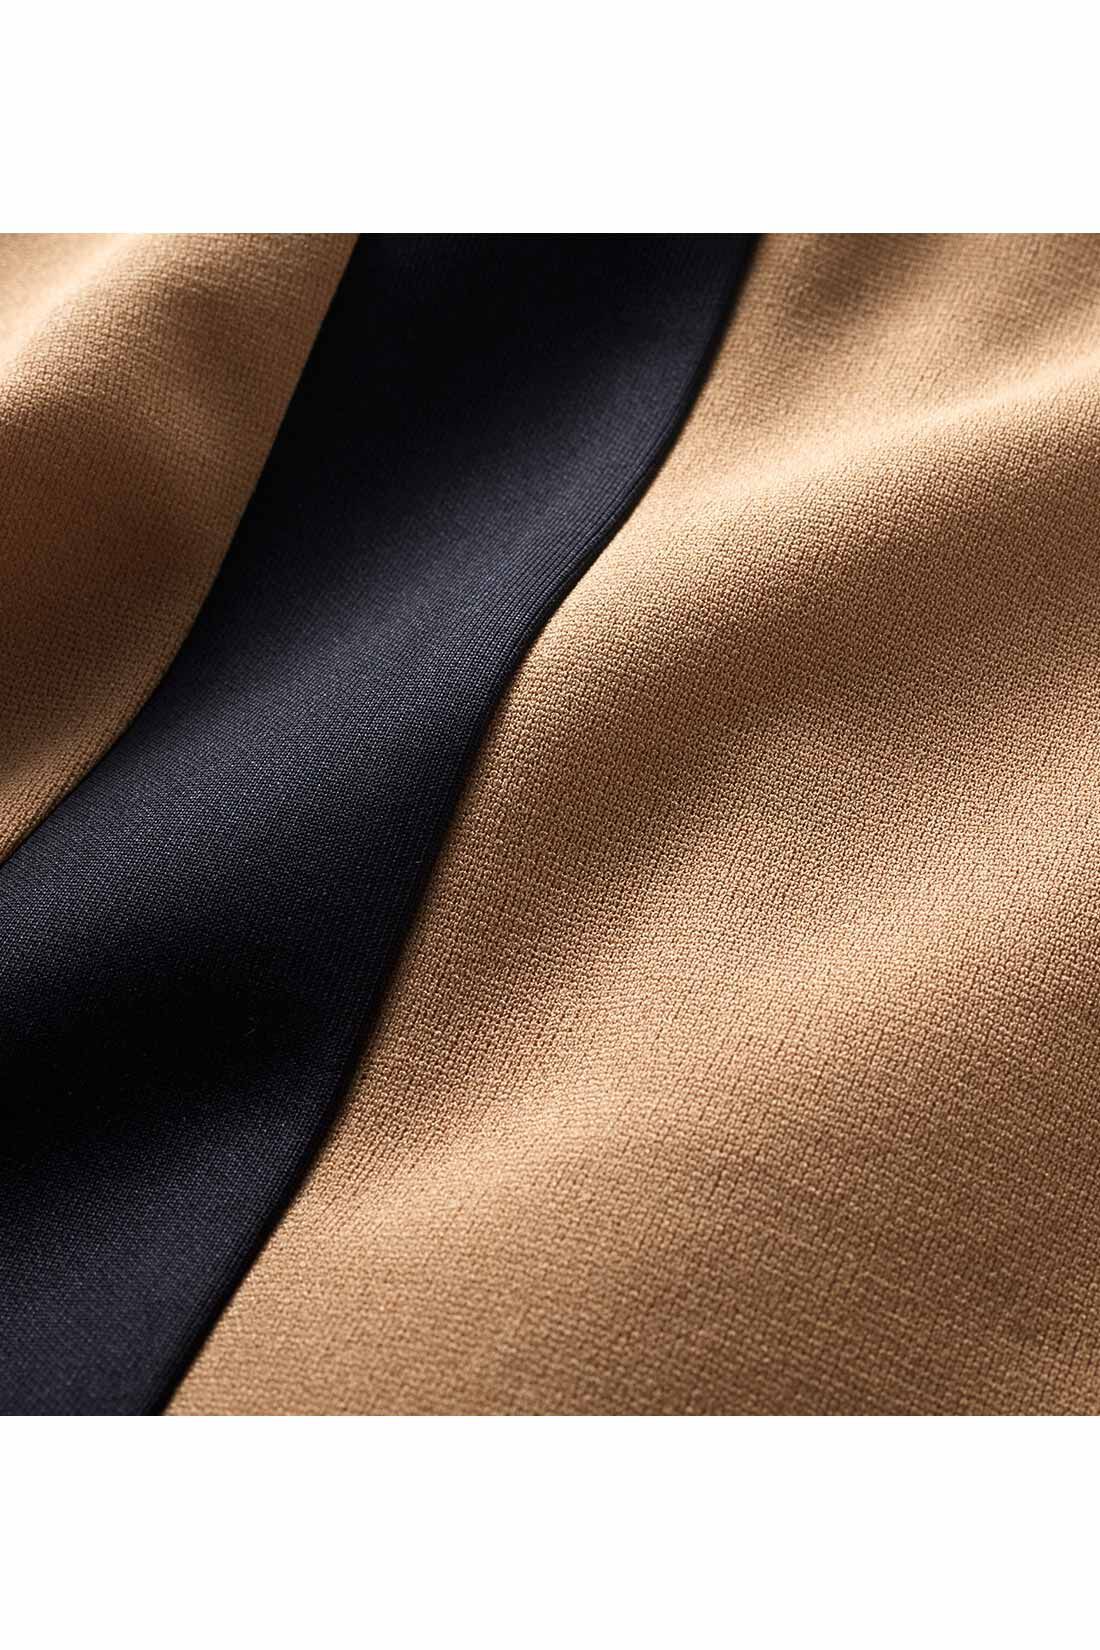 IEDIT[イディット]　布はく見えカットソー素材のサイドライン入りテーパードパンツ|きれいに見えてらくちん、軽く伸びやかなカットソージョーゼット素材。